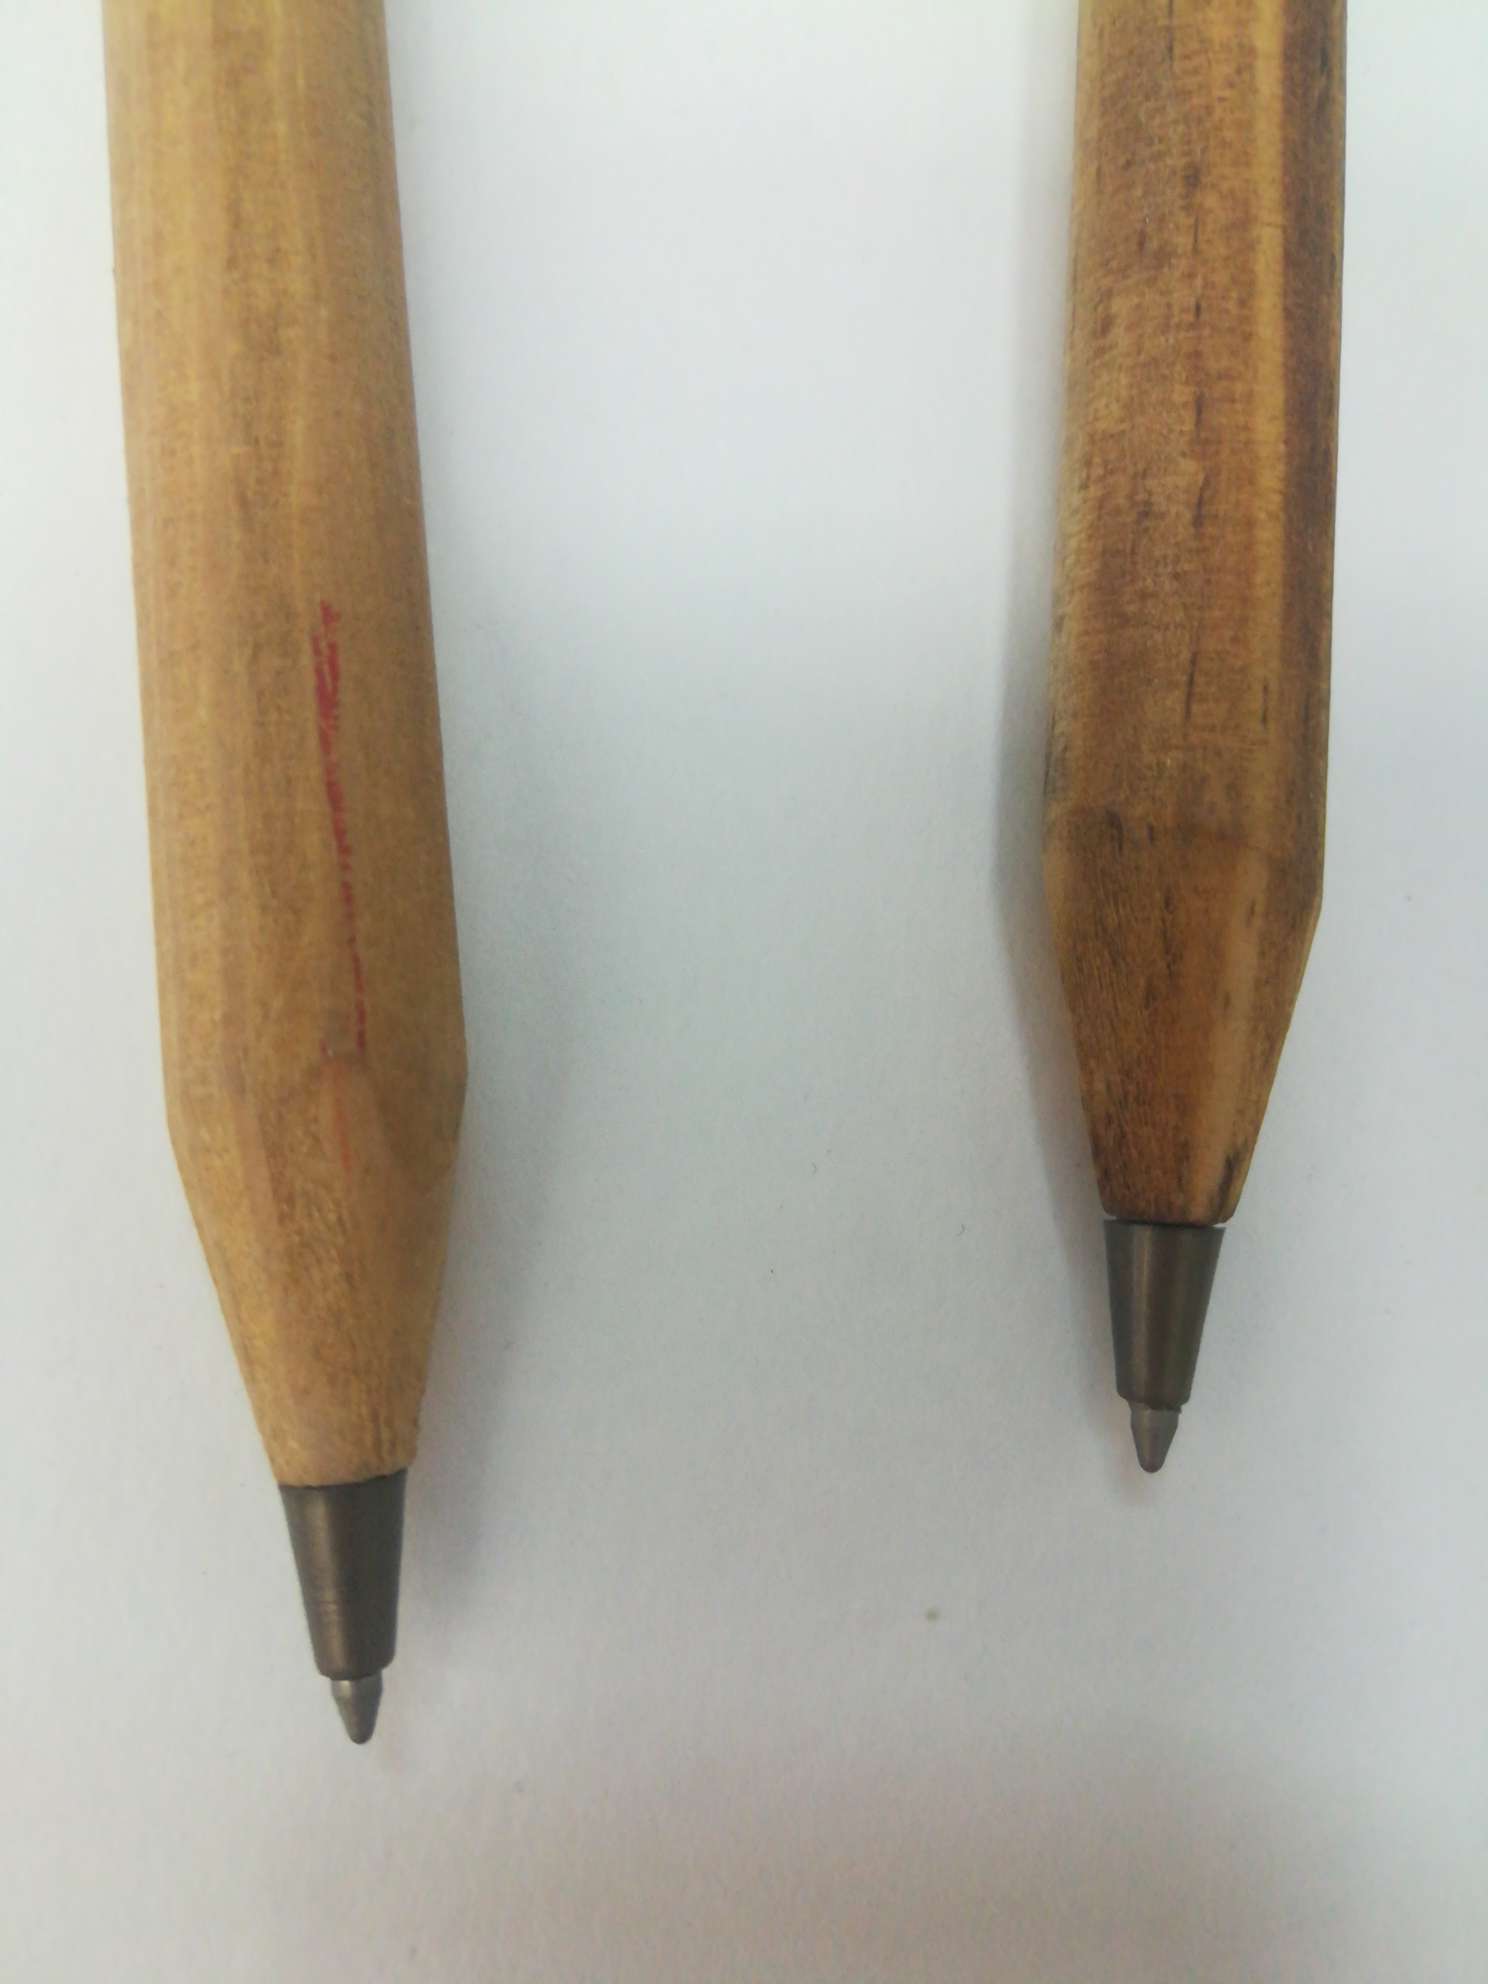 复古木头笔/促销礼品笔/创意造型笔细节图